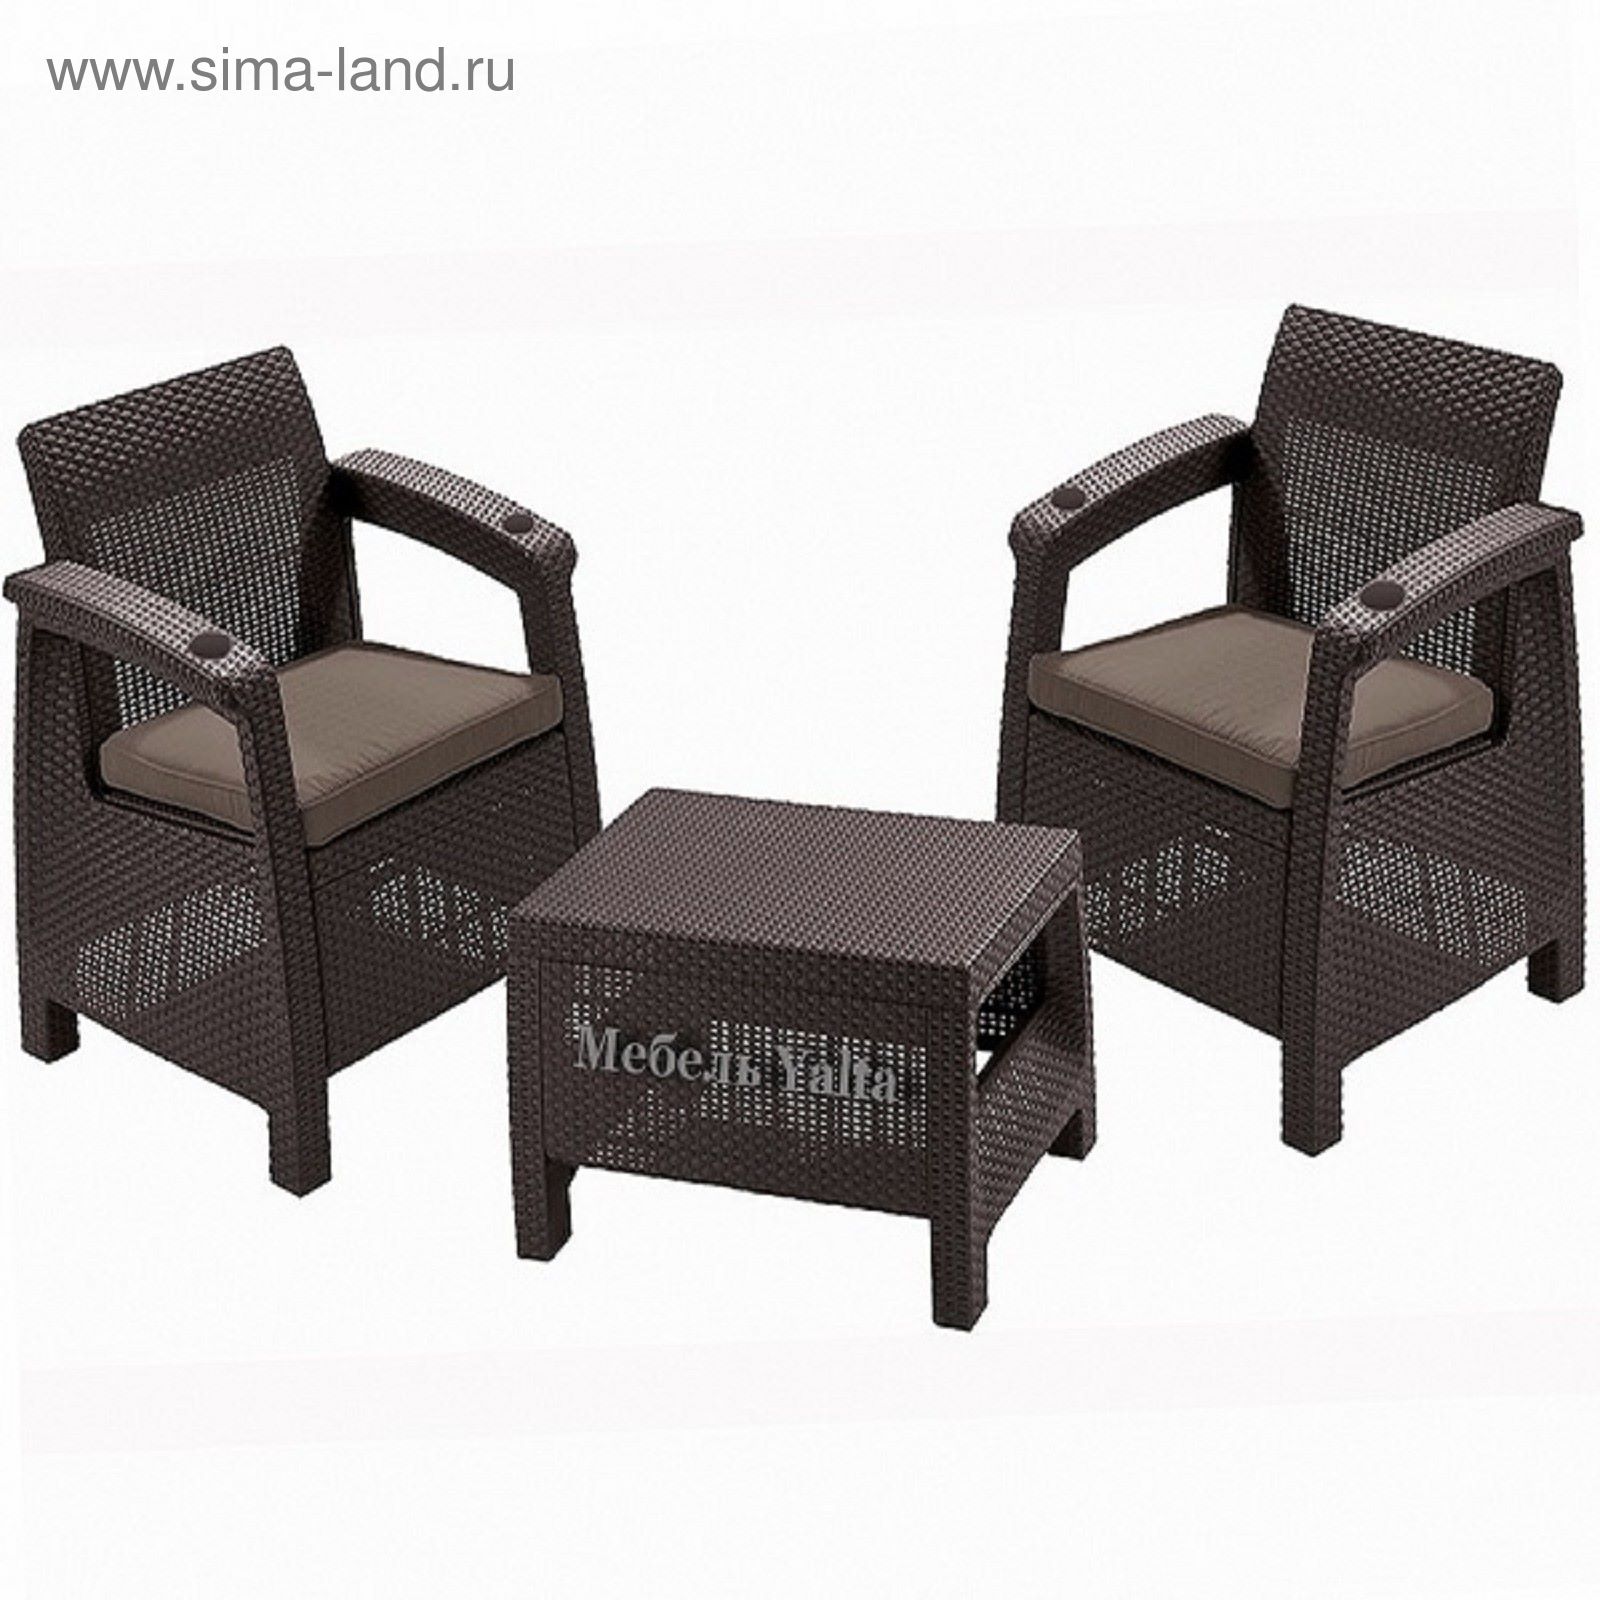 Комплект садовой мебели (2 кресла+ столик )   Yalta Weekend   Цвет венге